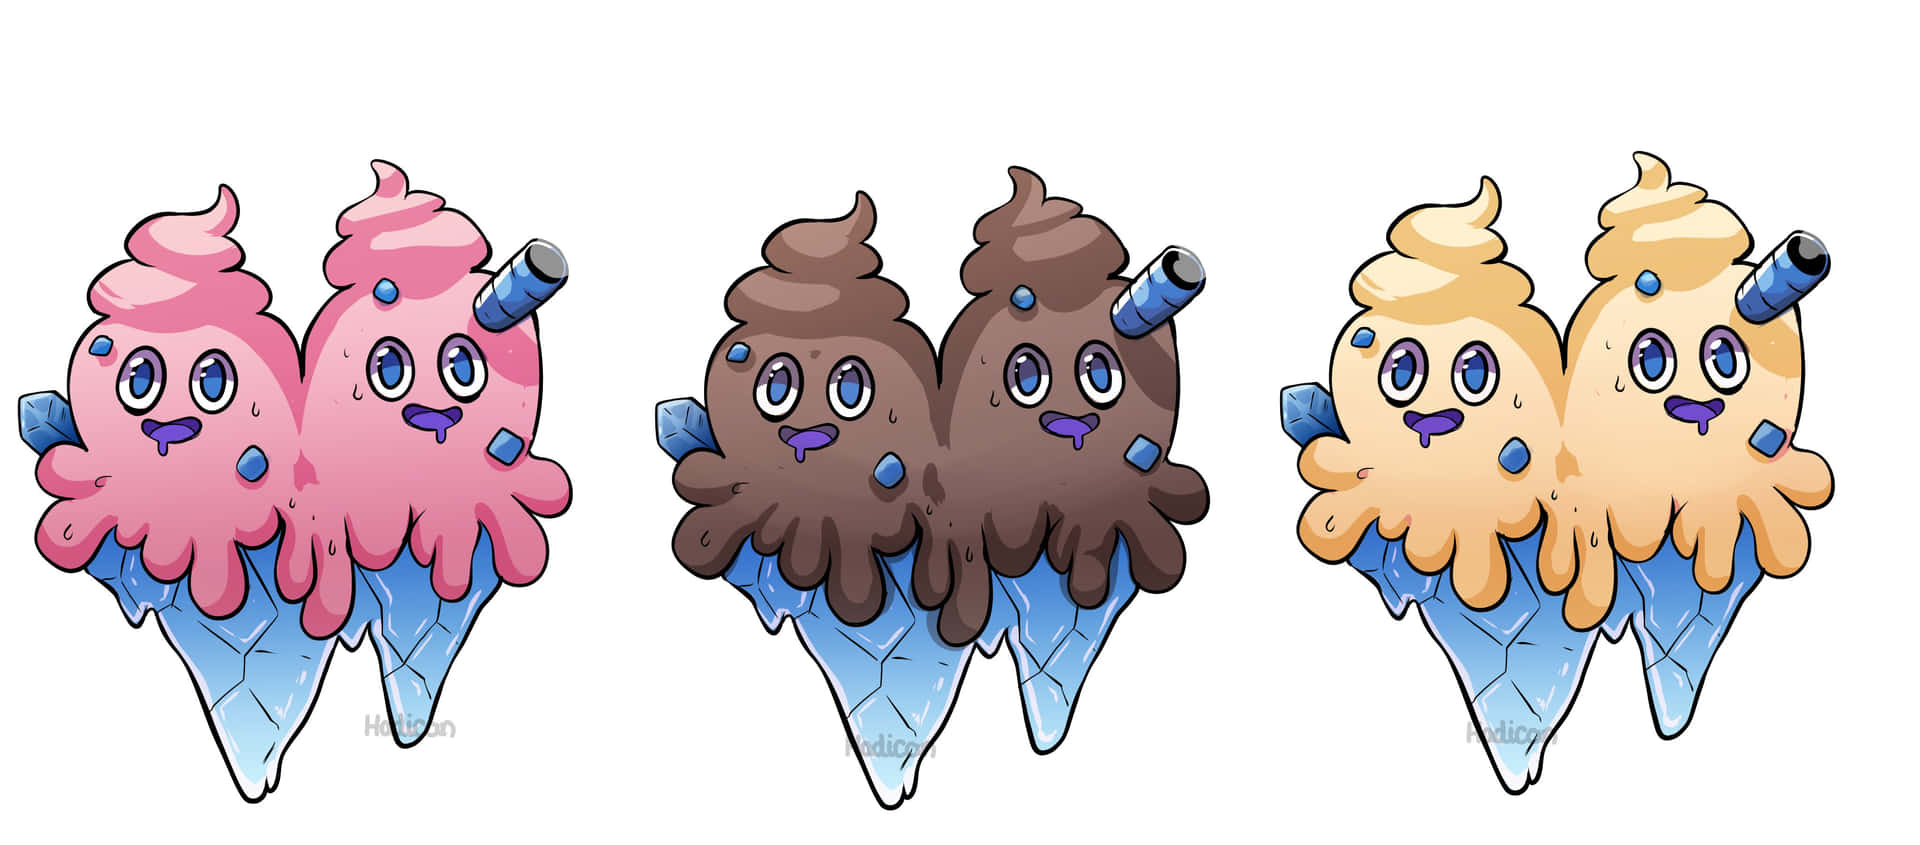 Vanilluxe Ice Cream Flavors Pokemon Fanart Wallpaper